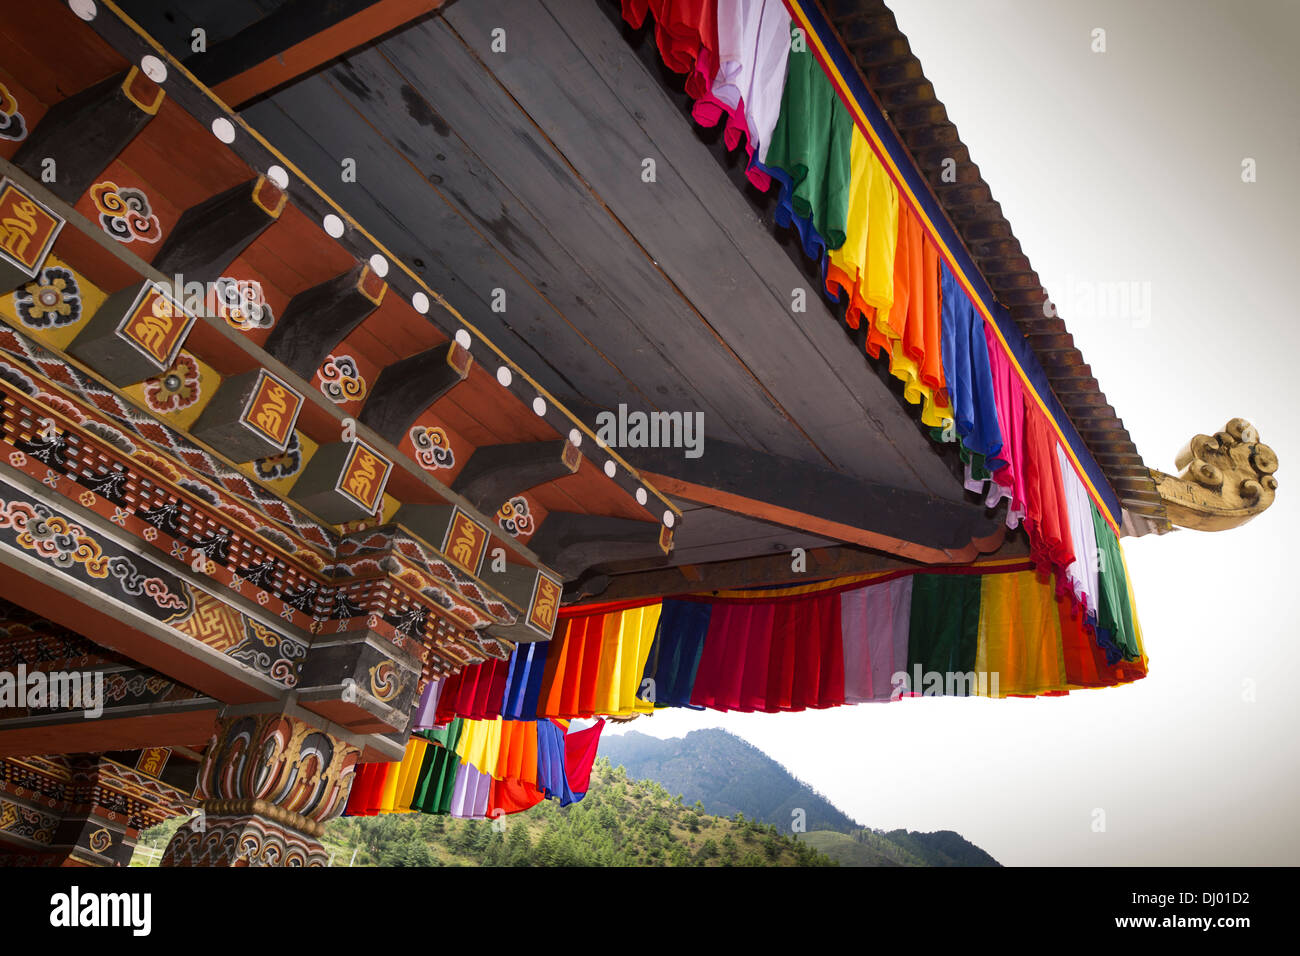 Le Bhoutan, Thimphu Dzong, Tsechu annuel richement décoré, peint l'abbé balcon Banque D'Images